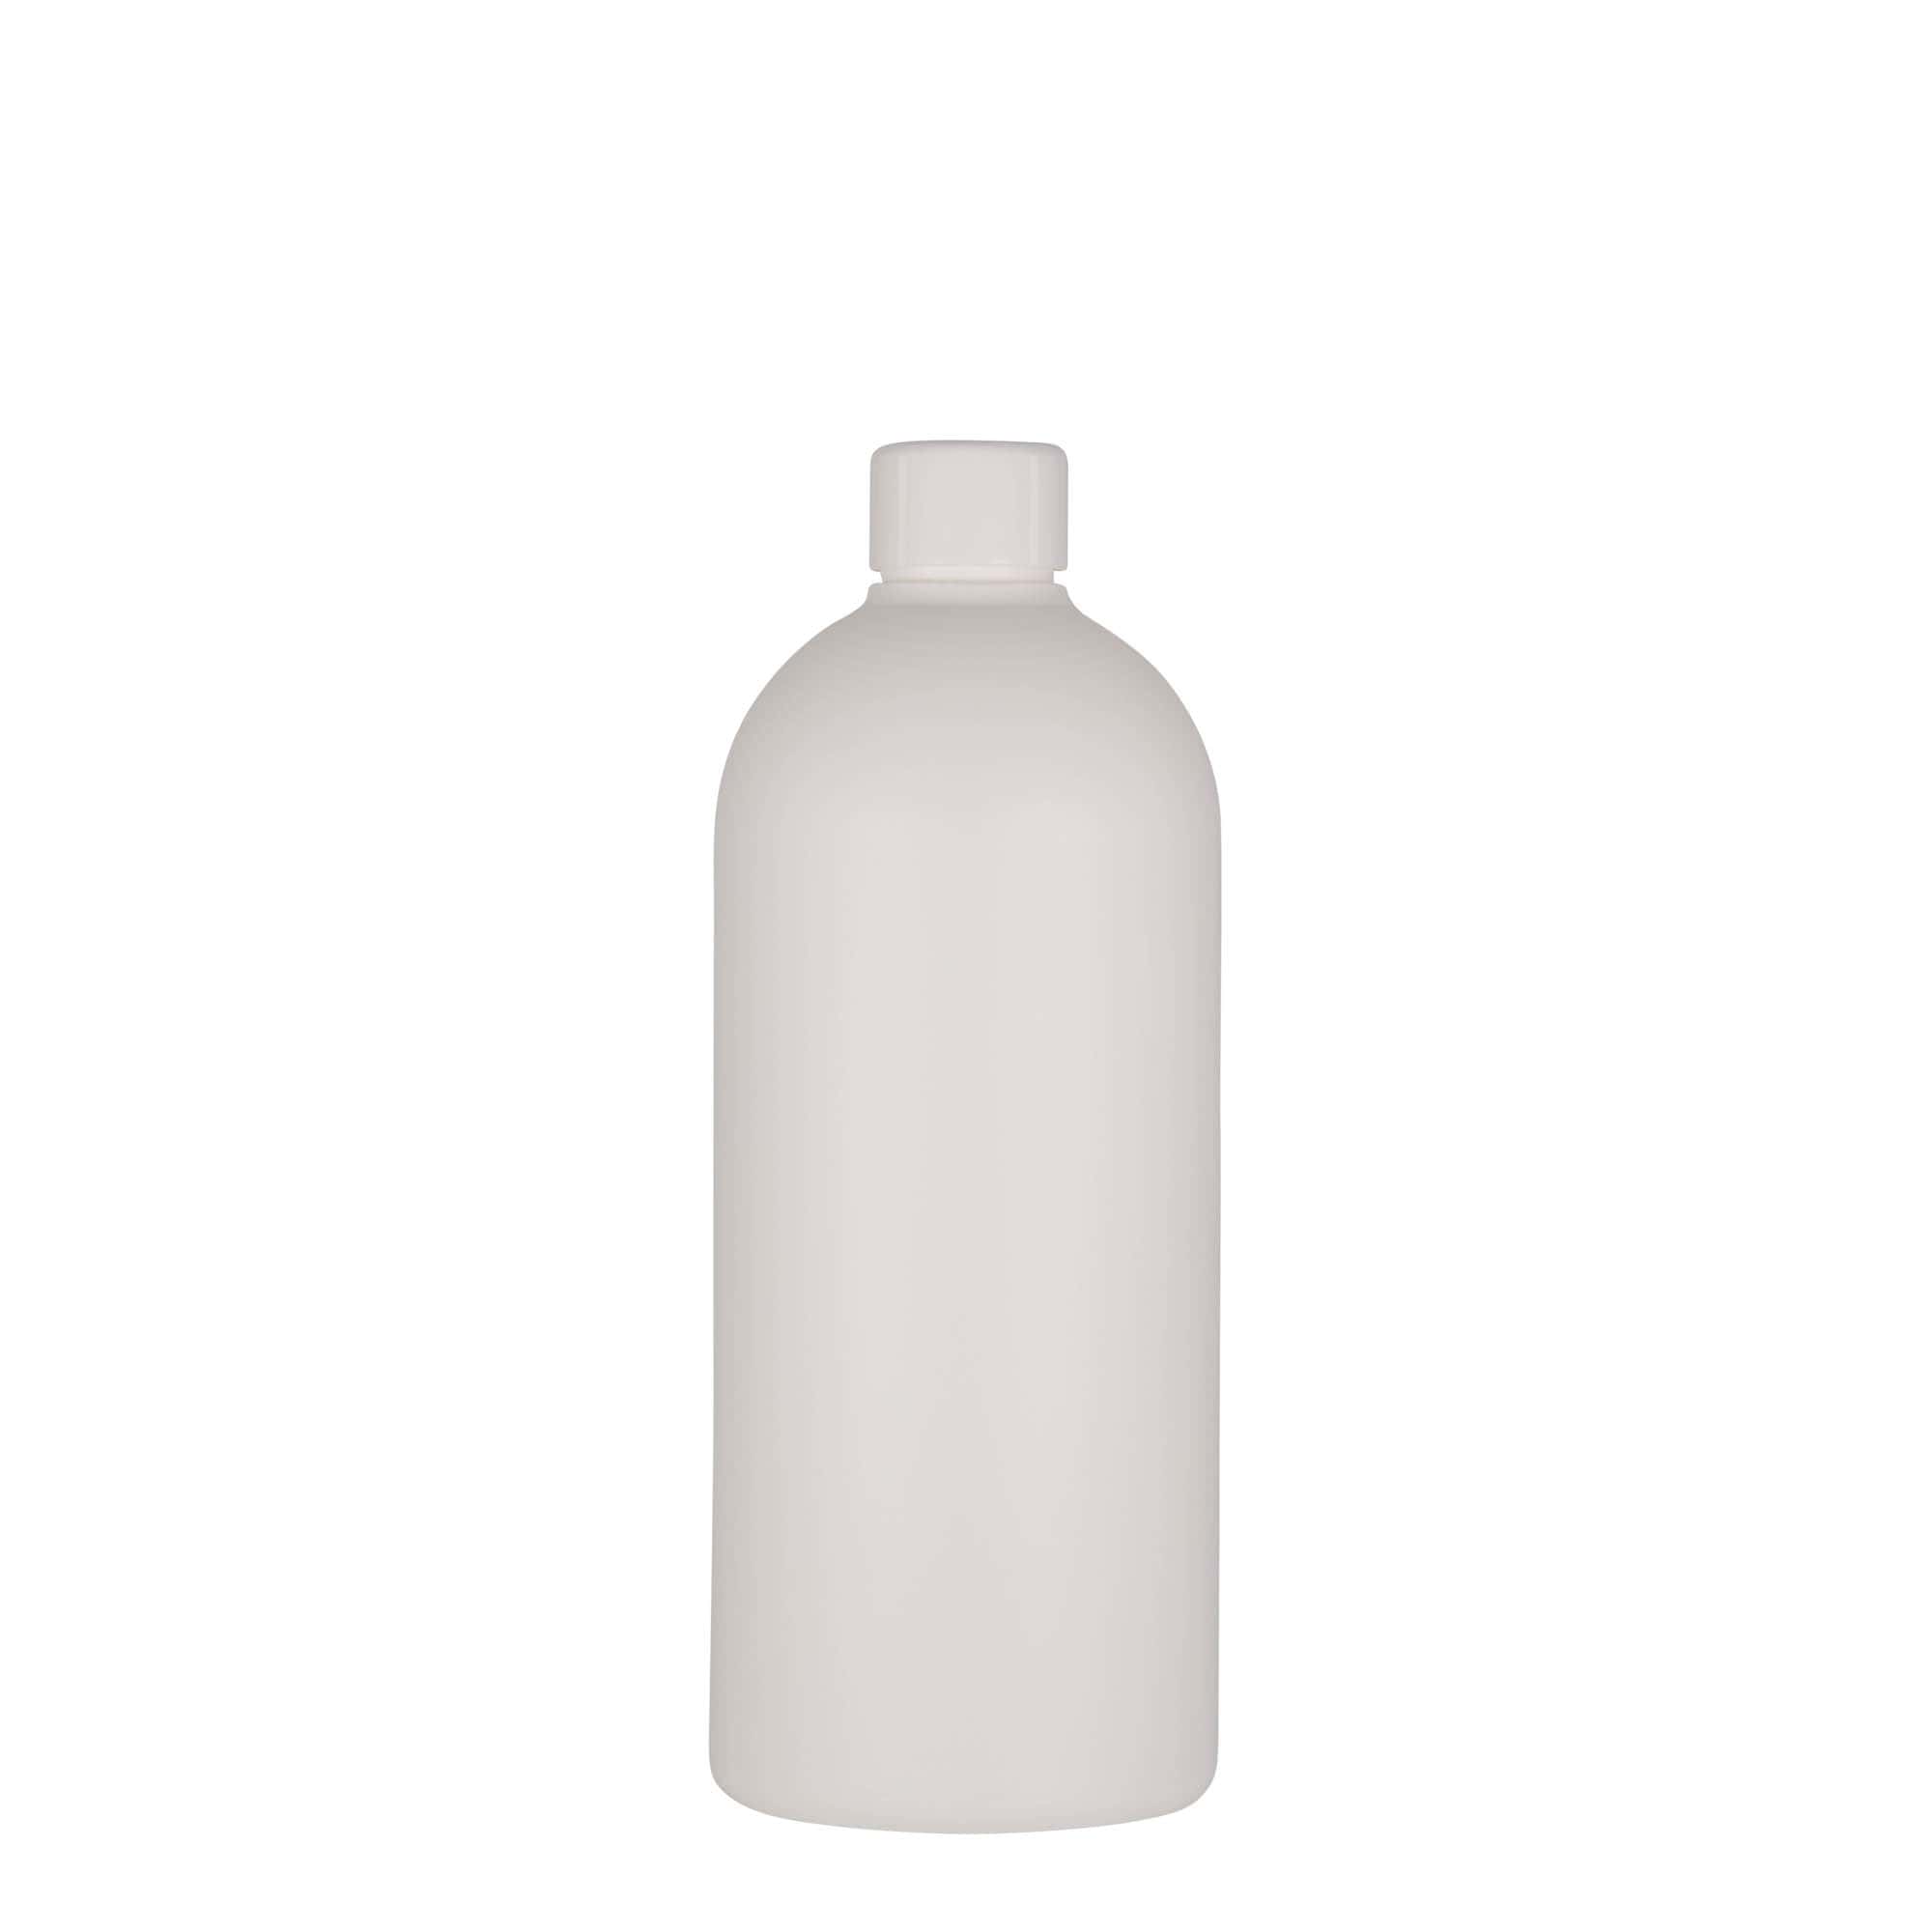 500 ml plastic bottle 'Tuffy', HDPE, white, closure: GPI 24/410